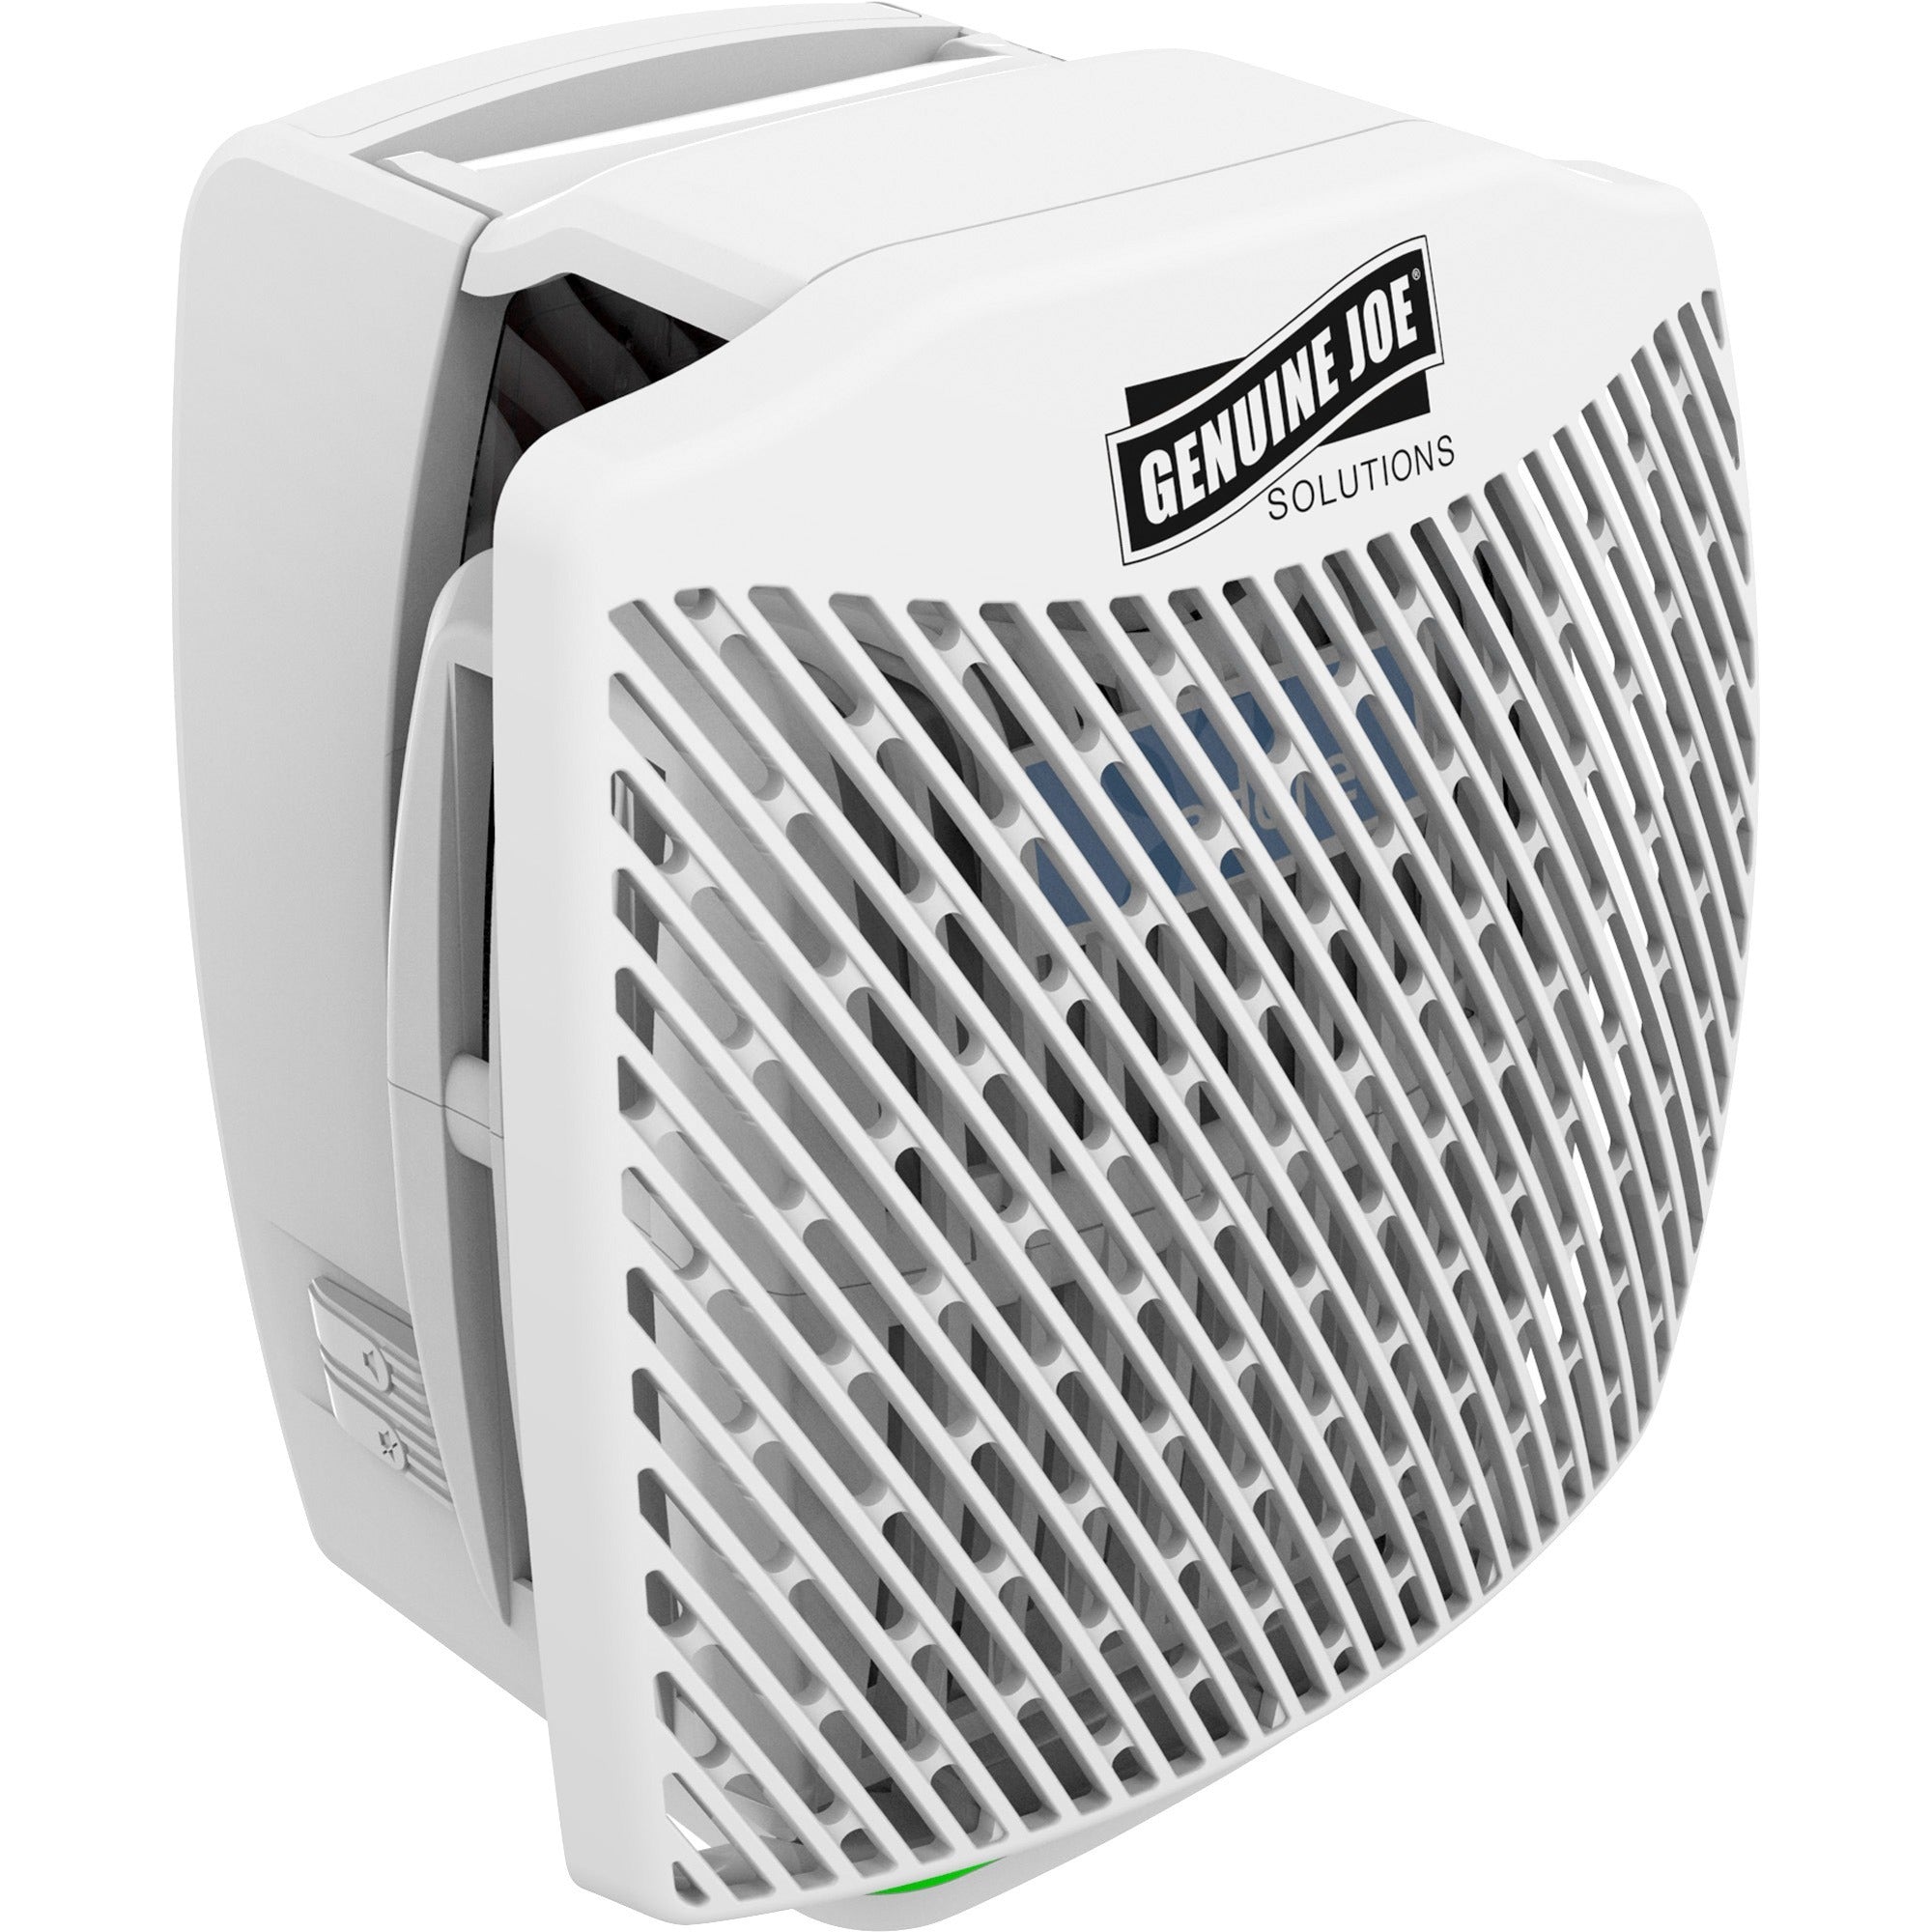 Genuine Joe Air Freshener Dispenser System - 30 Day Refill Life - 6000 ft Coverage - 6 / Carton - White - 5